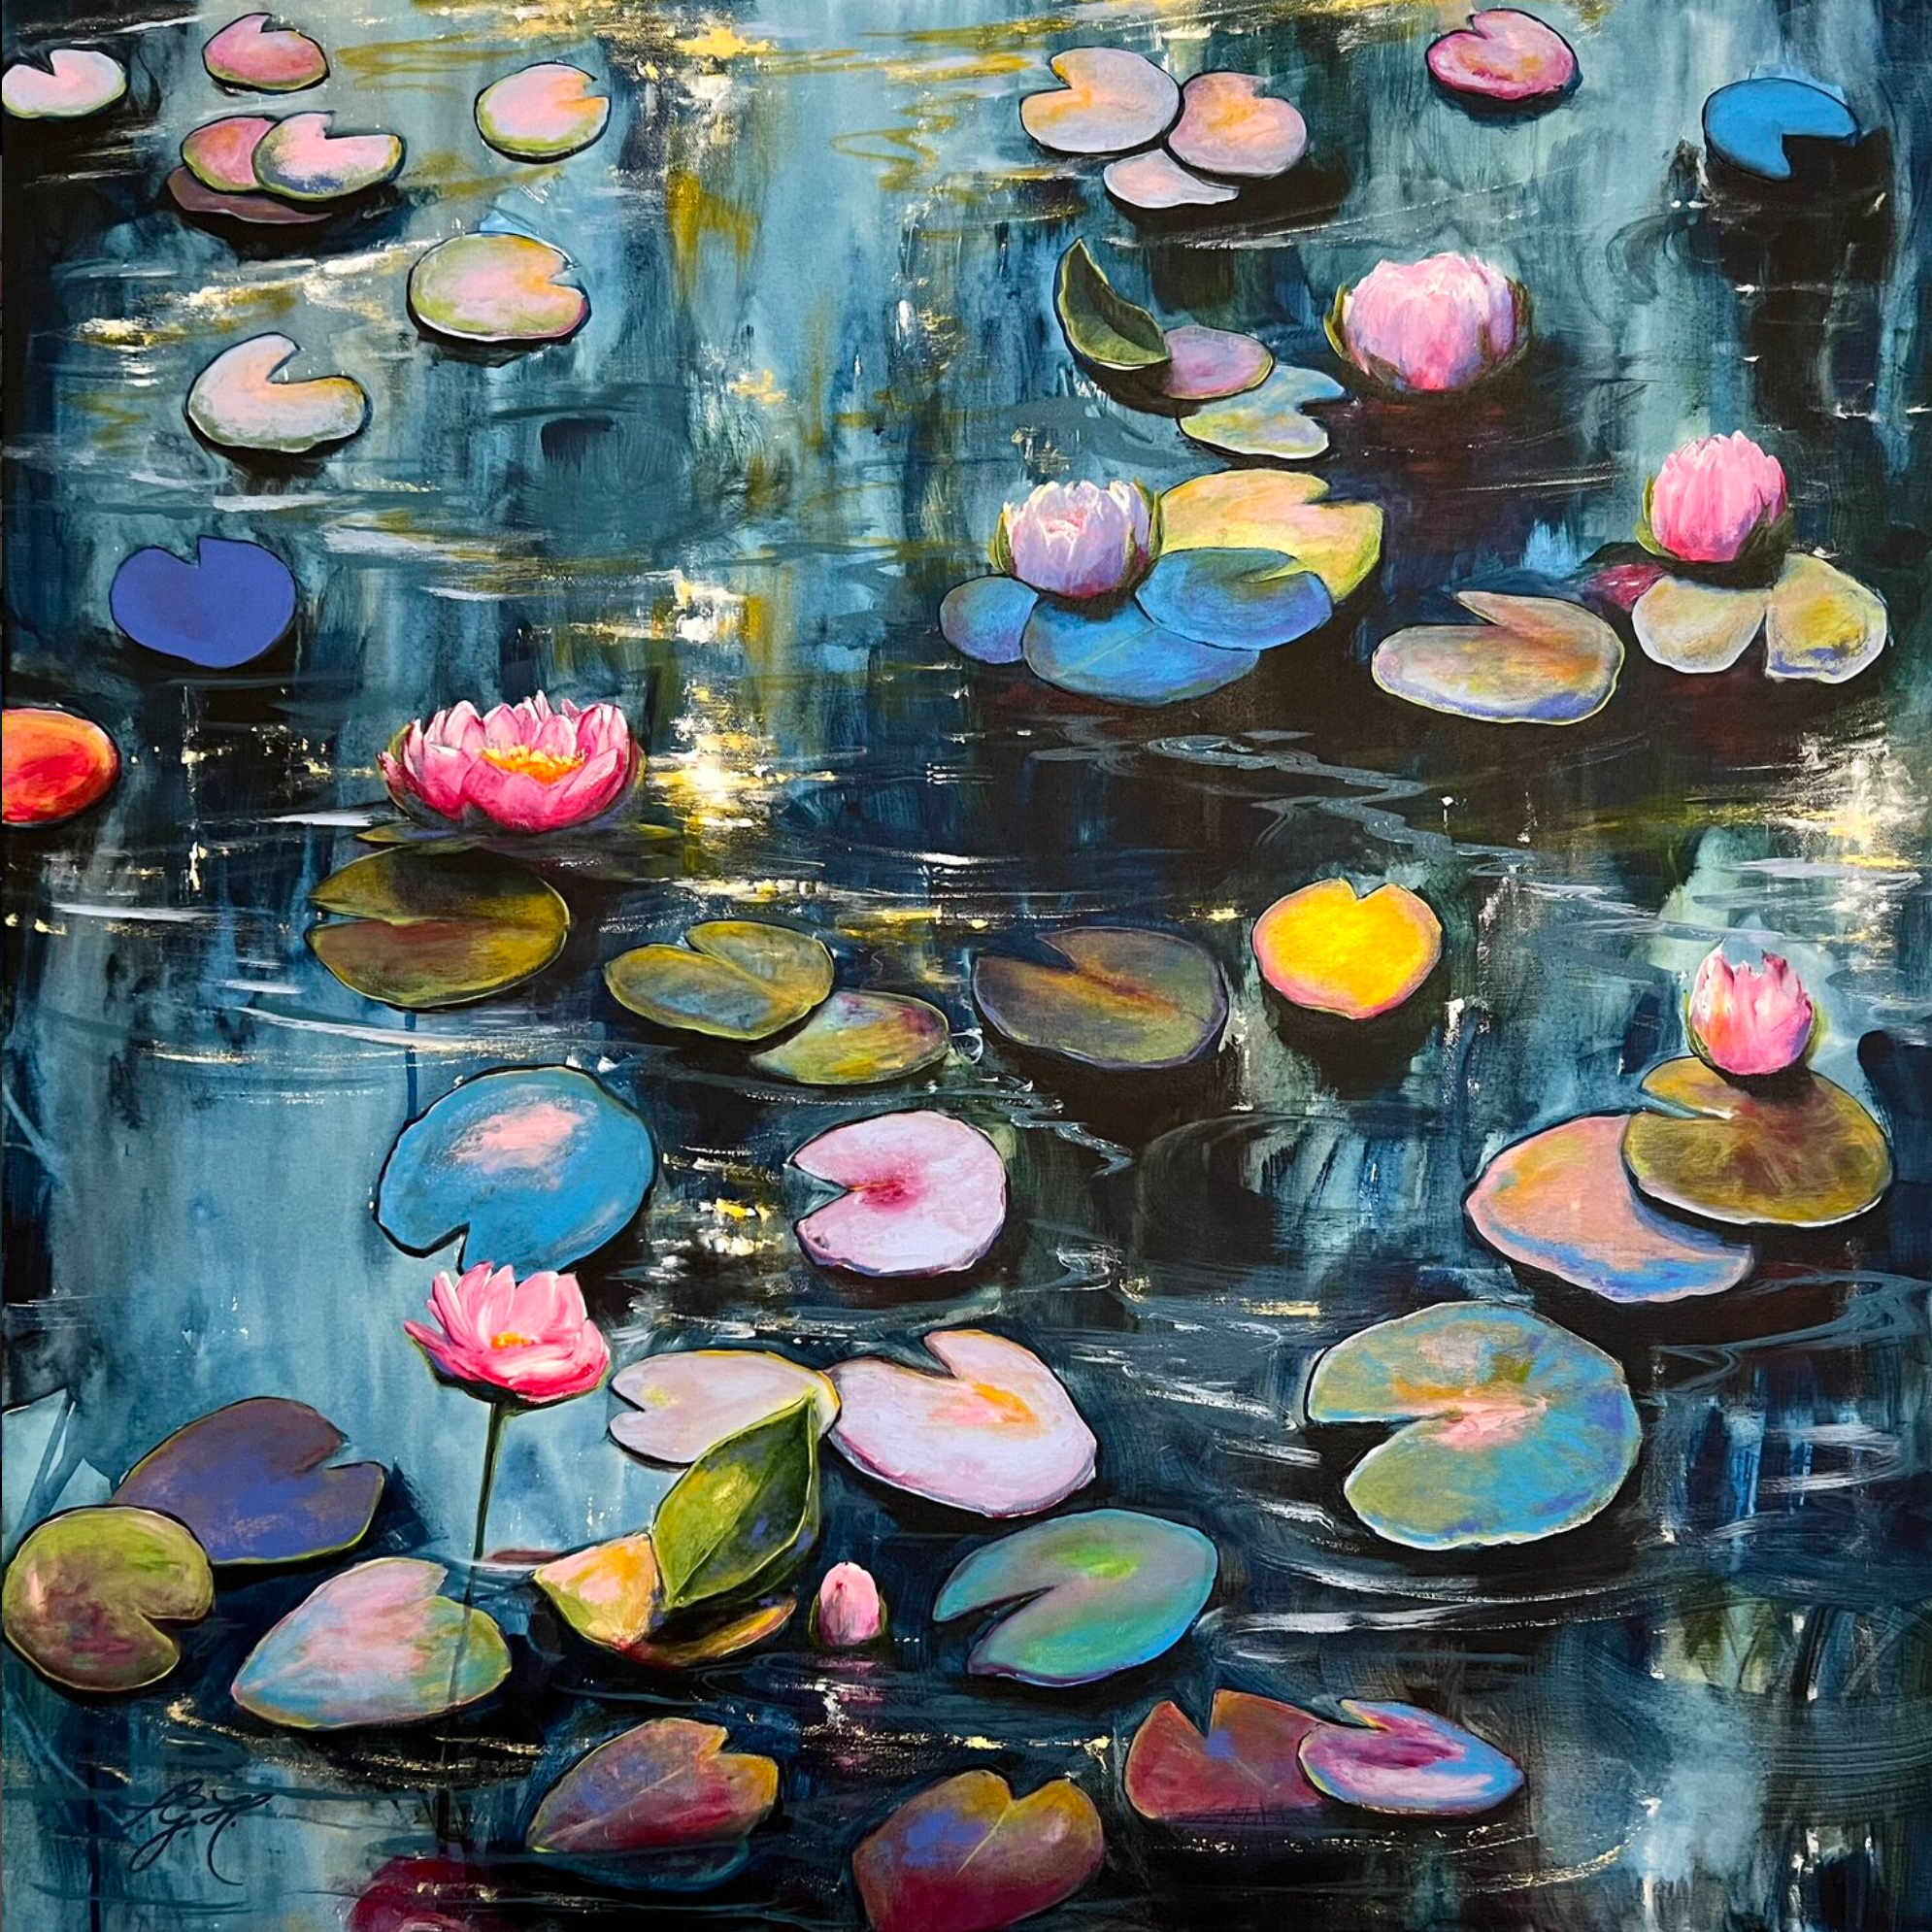 El colorido cuadro "Happy At The Pond 4" de Sandra Gebhardt-Hoepfner muestra una lenta puesta de sol, con reflejos rosas y naranja cálido en el agua. Las flores blancas y rosas descansan relajadas sobre las hojas somnolientas, coloridas y verdes. Es tan relajante contemplarlas y ver el agua moviéndose suavemente.